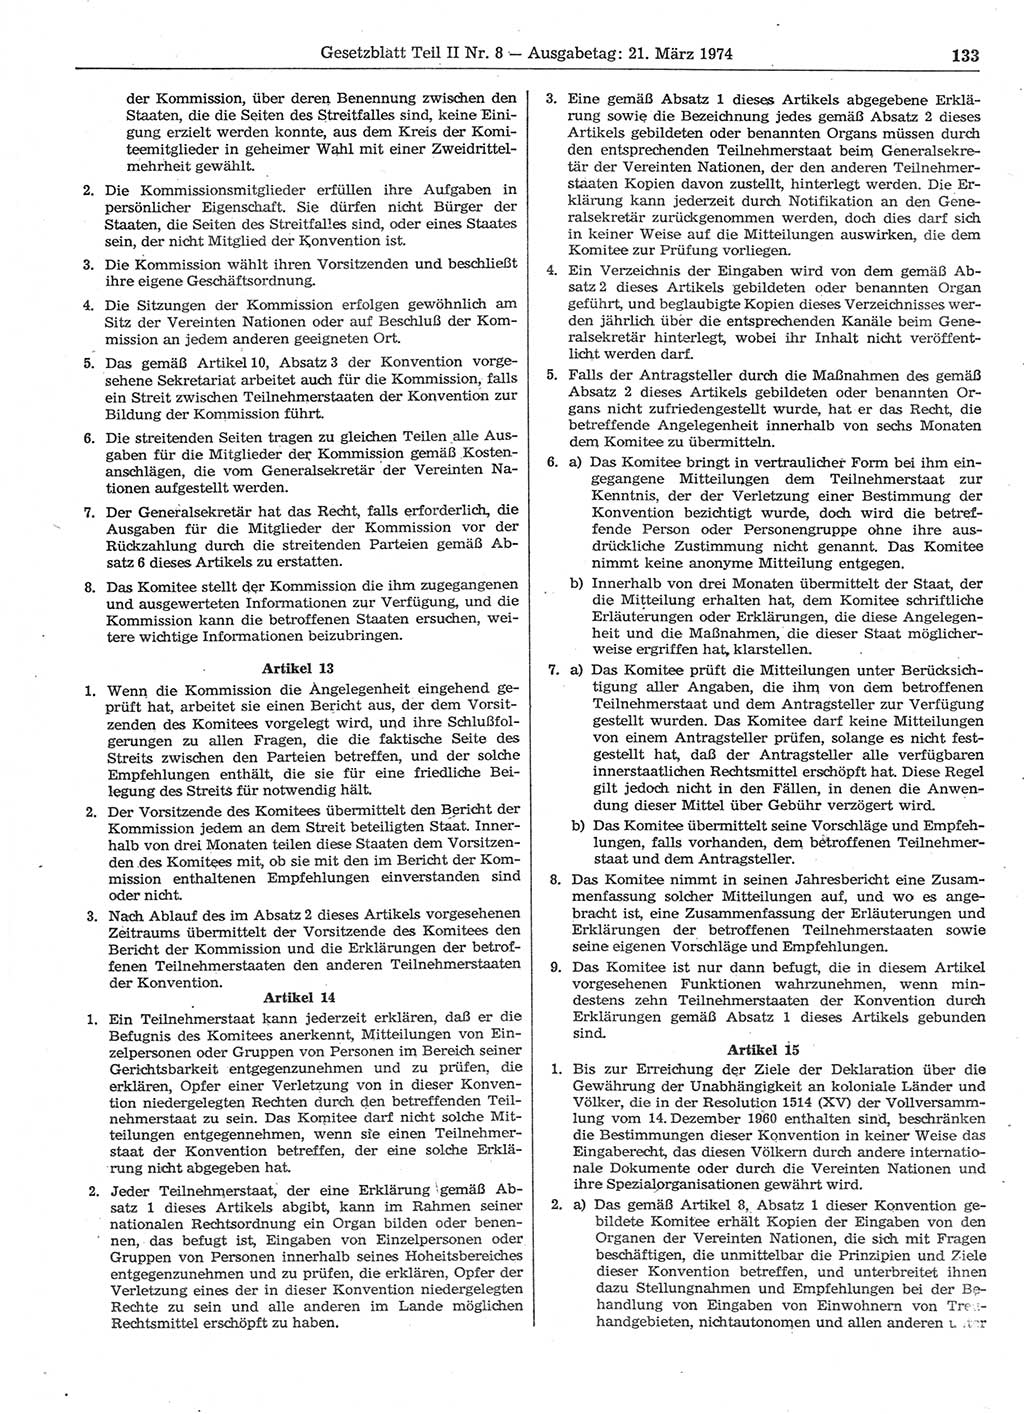 Gesetzblatt (GBl.) der Deutschen Demokratischen Republik (DDR) Teil ⅠⅠ 1974, Seite 133 (GBl. DDR ⅠⅠ 1974, S. 133)